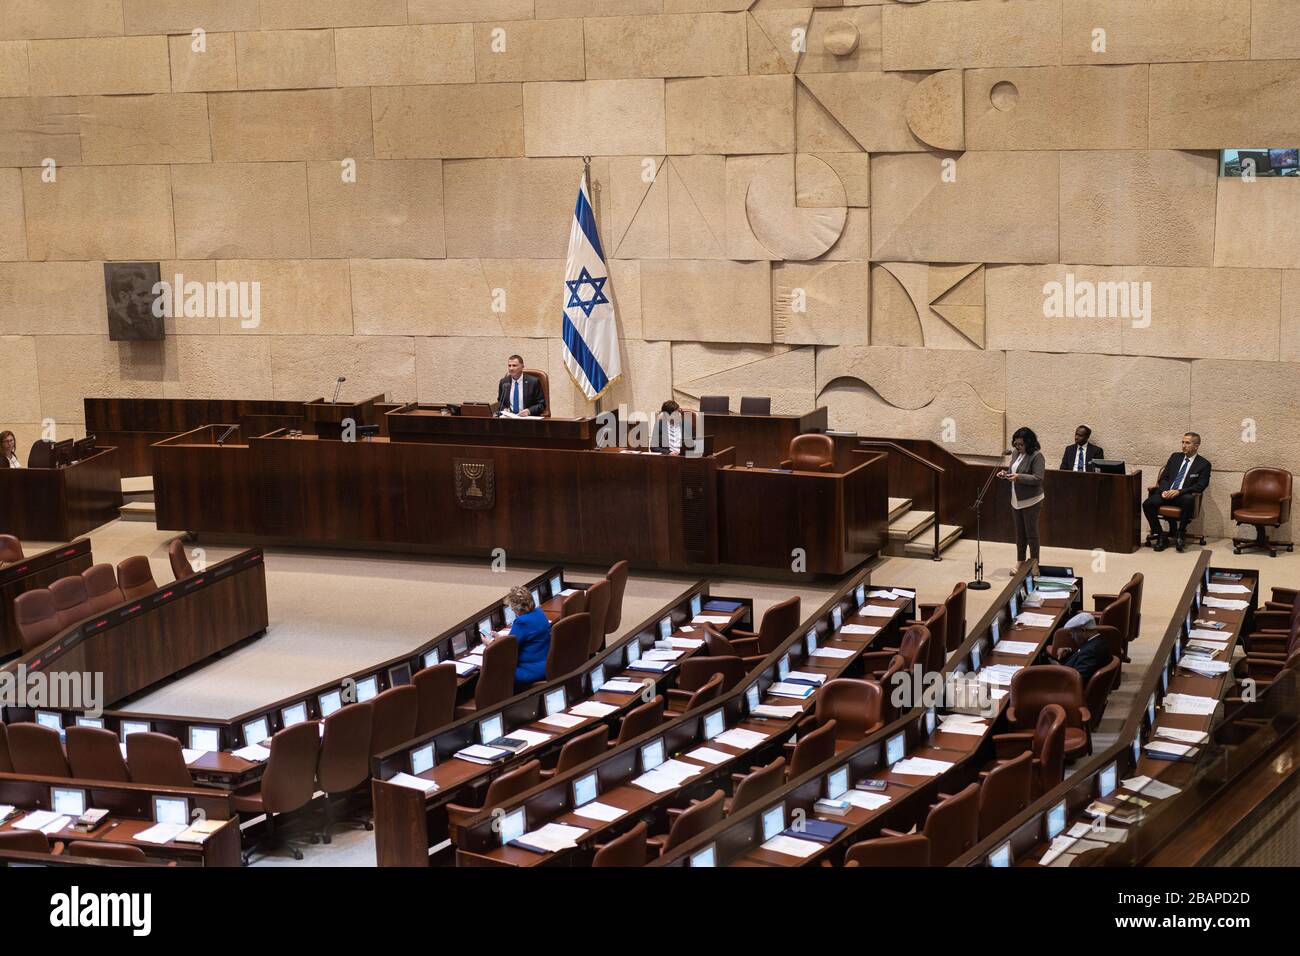 Photos des premiers ministres israéliens au Parlement national monocaméral de la Knesset d'Israël Banque D'Images